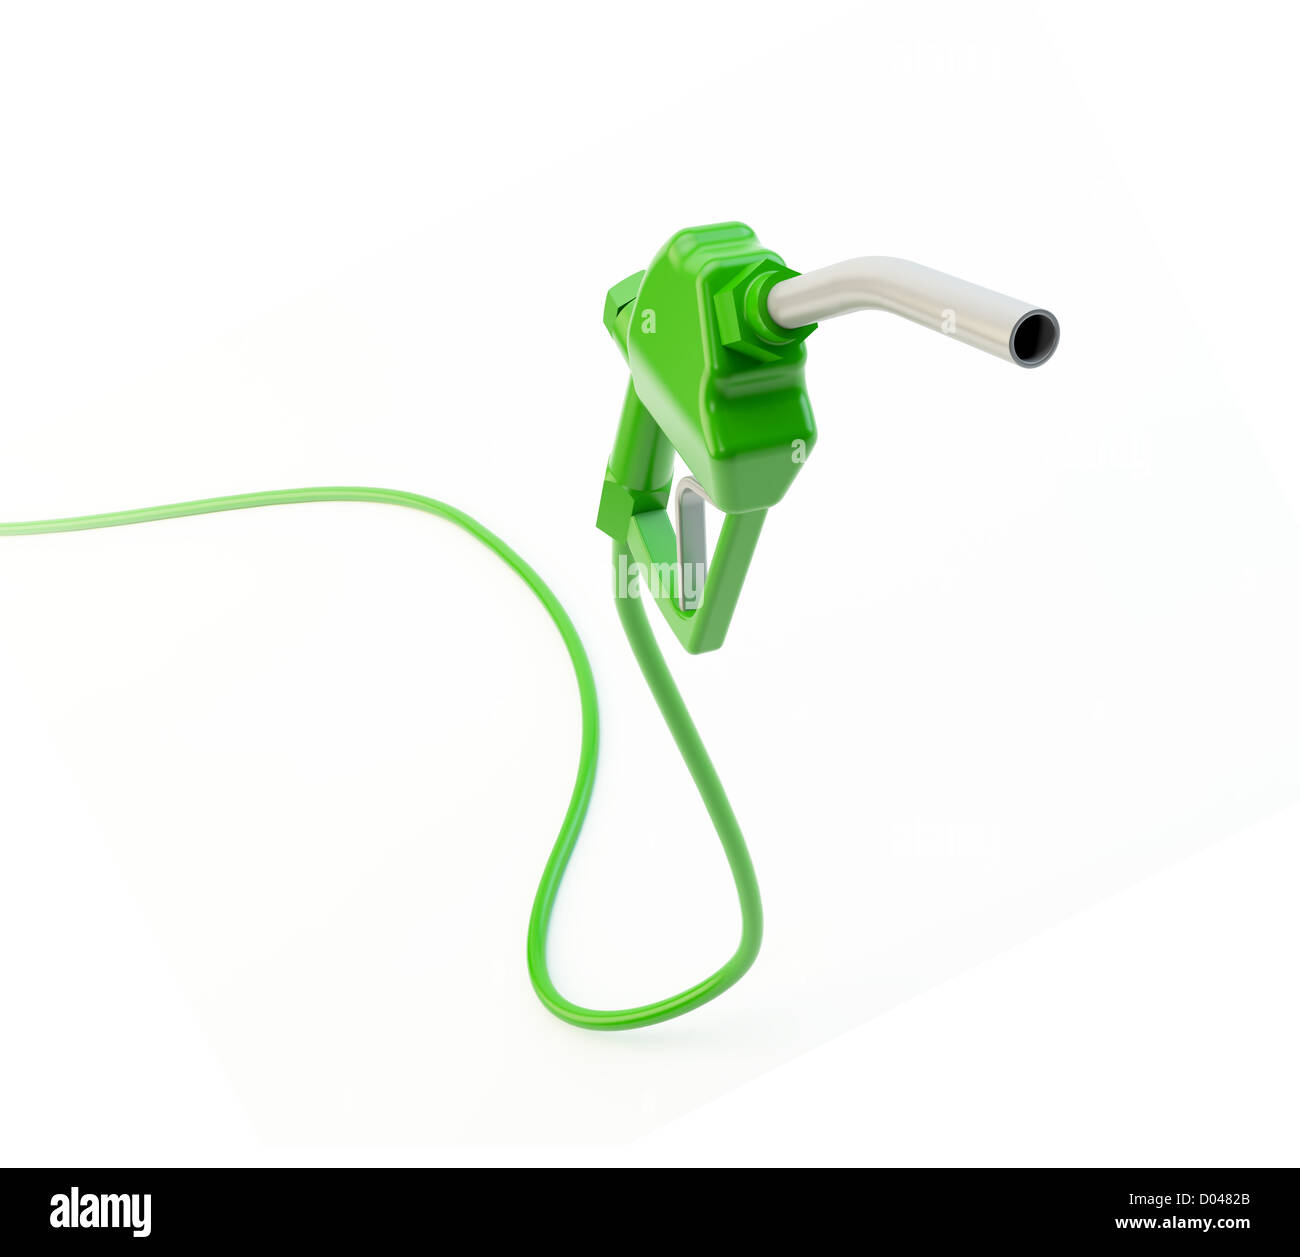 Grüner Treibstoff Düse - umweltfreundlich und Biokraftstoff-Konzept Stockfoto